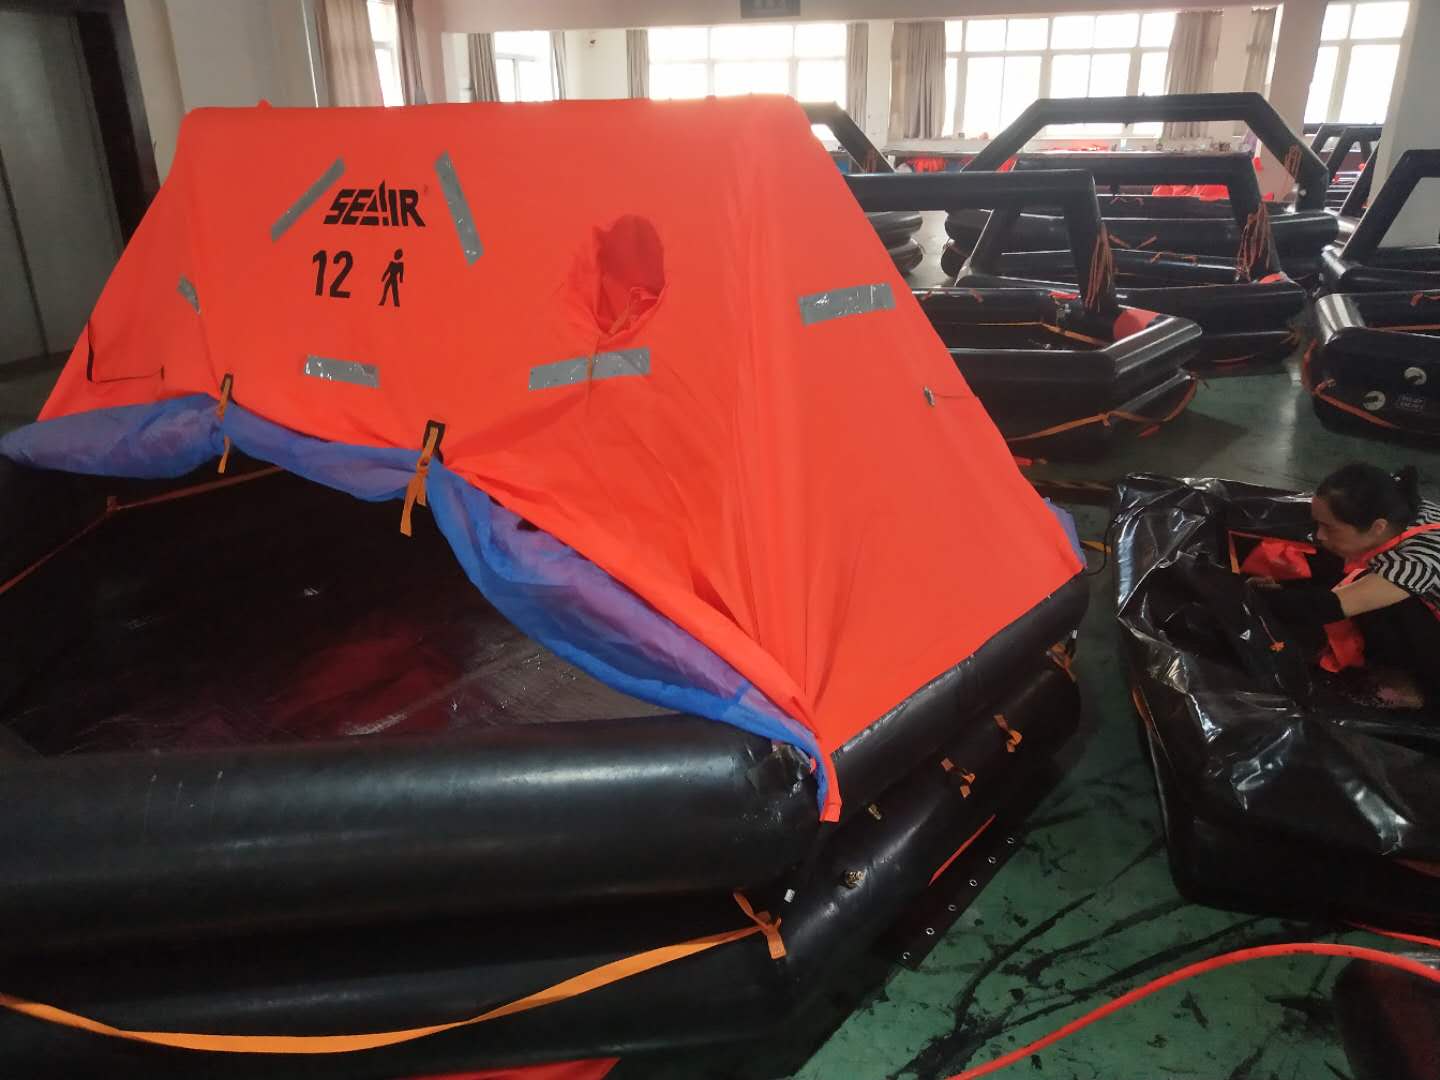 宁波海神自扶正ASR-6人救生筏工厂直销提供CCS/EC 证书的自扶正救生筏的价格、参数、尽在宁波海神救生设备有限公司